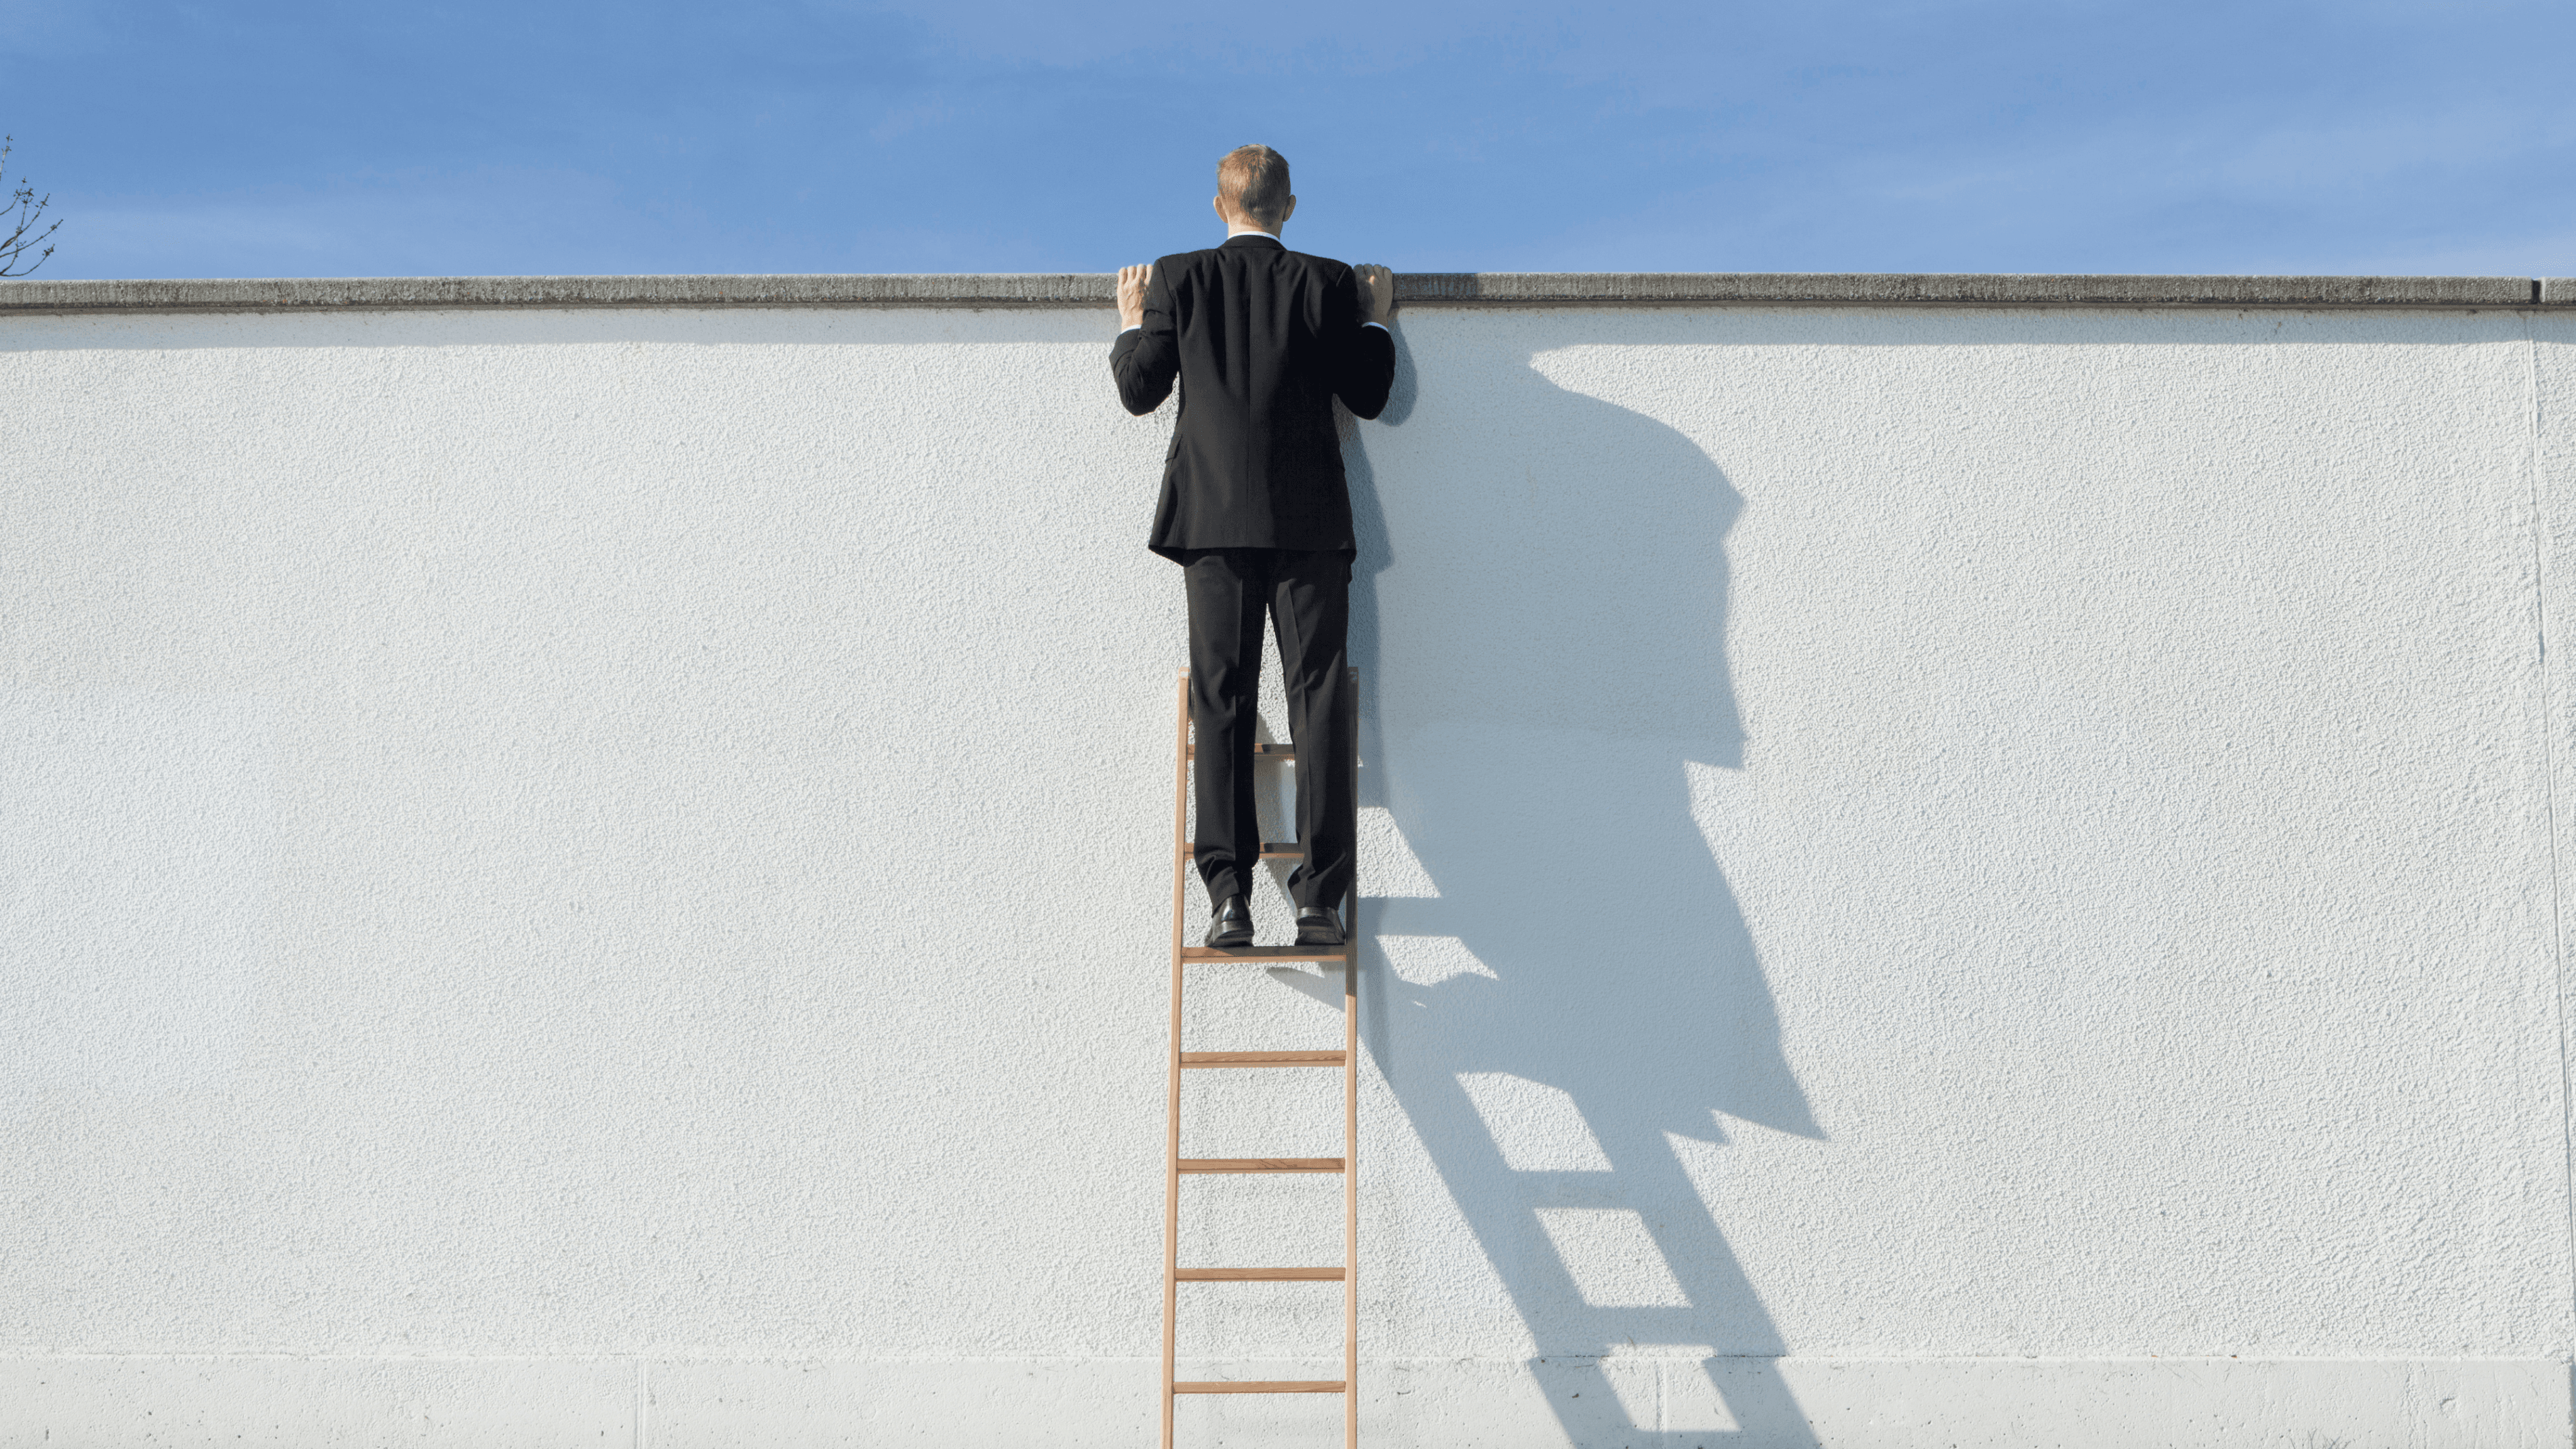 Iemand die op een ladder staat en over een hoge muur kijkt